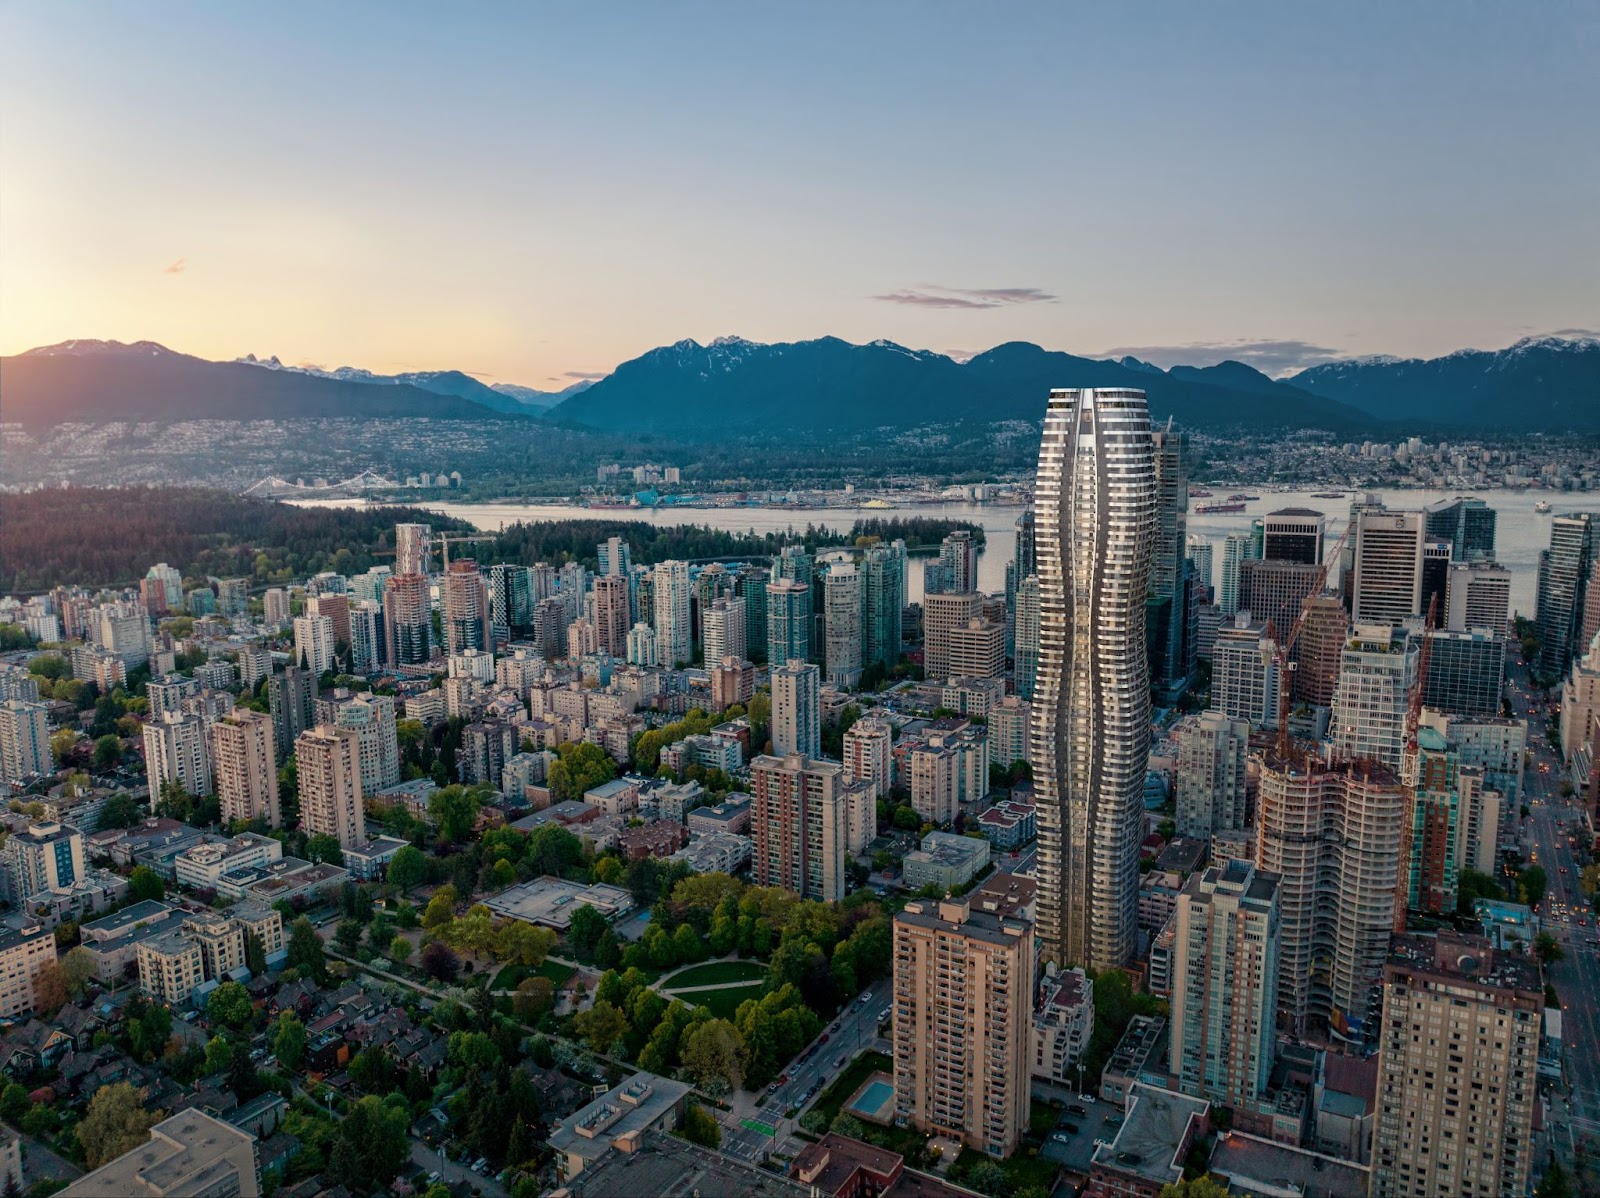 全球最高被动式高效节能住宅 落地温哥华市中心